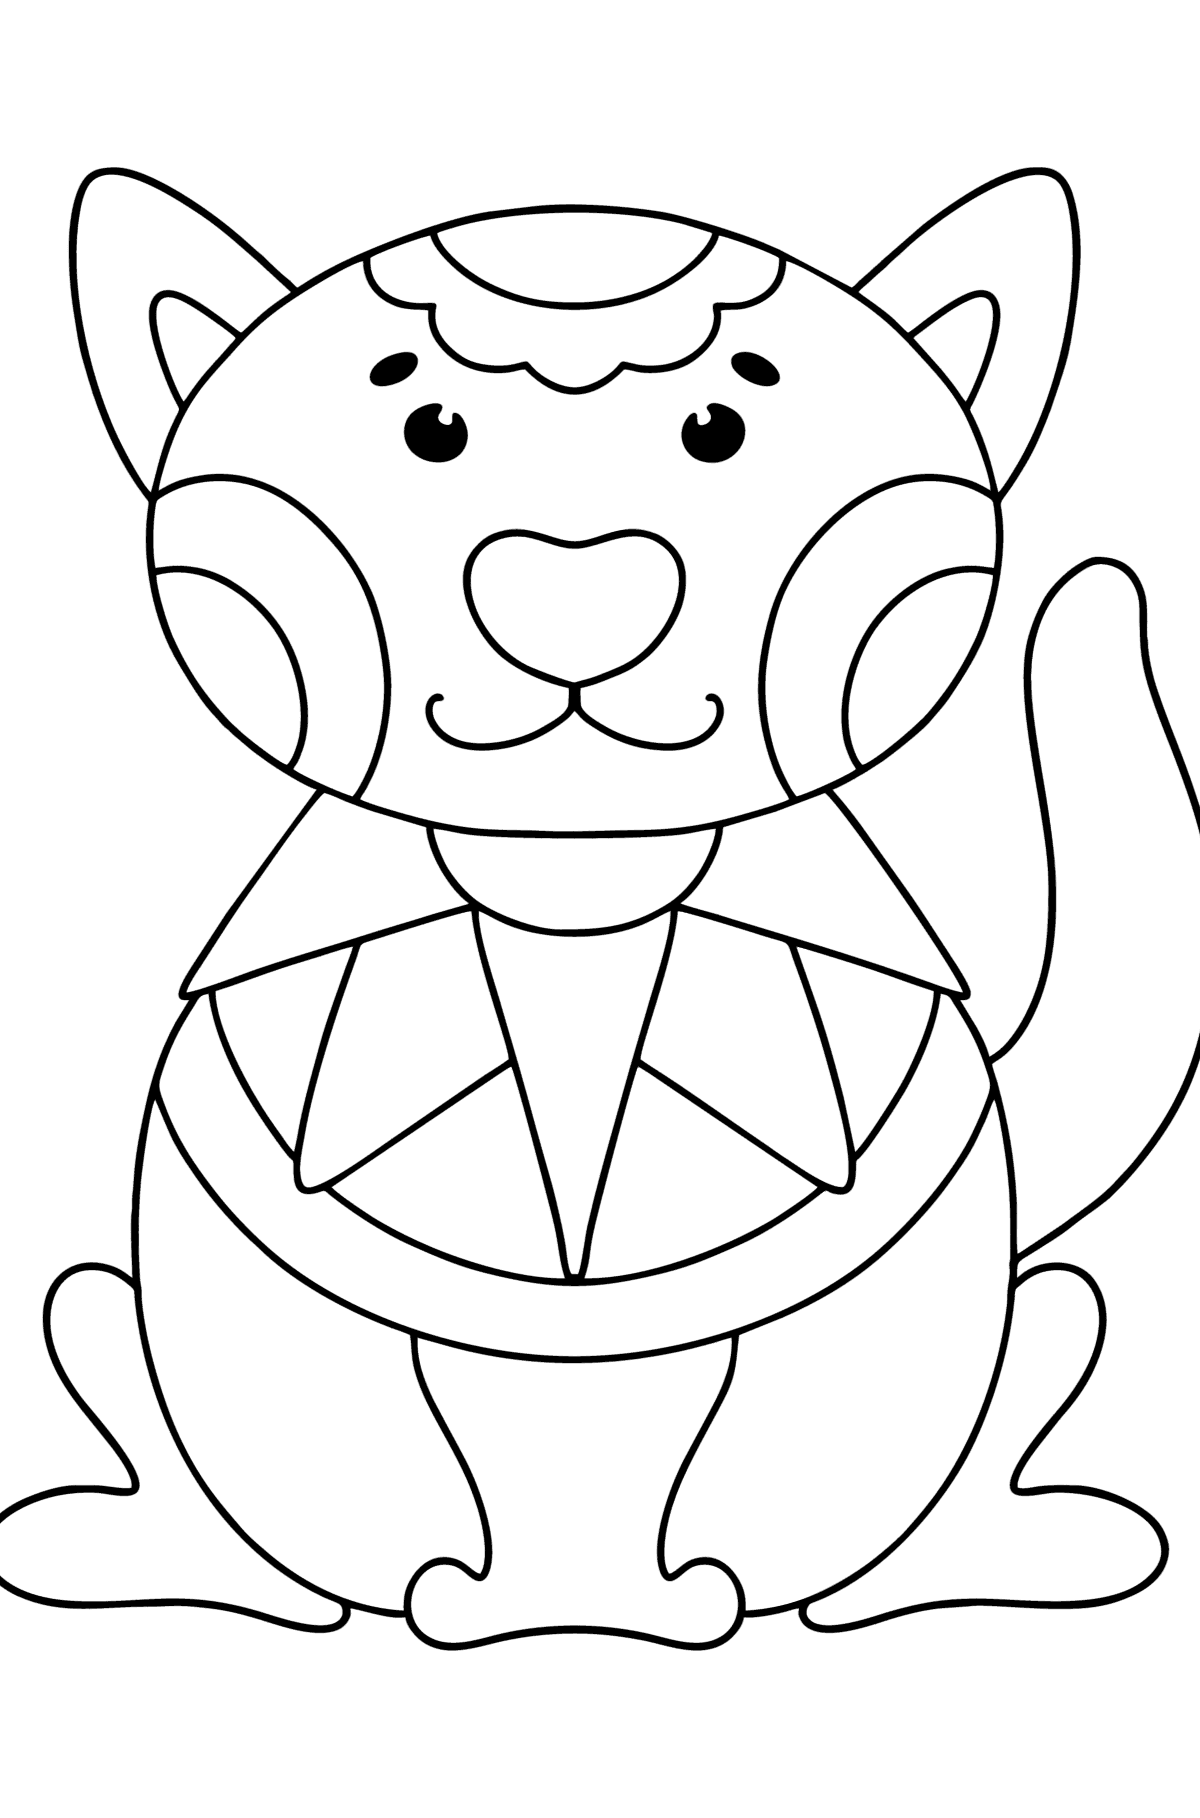 Pisica antistres desen de colorat - Desene de colorat pentru copii